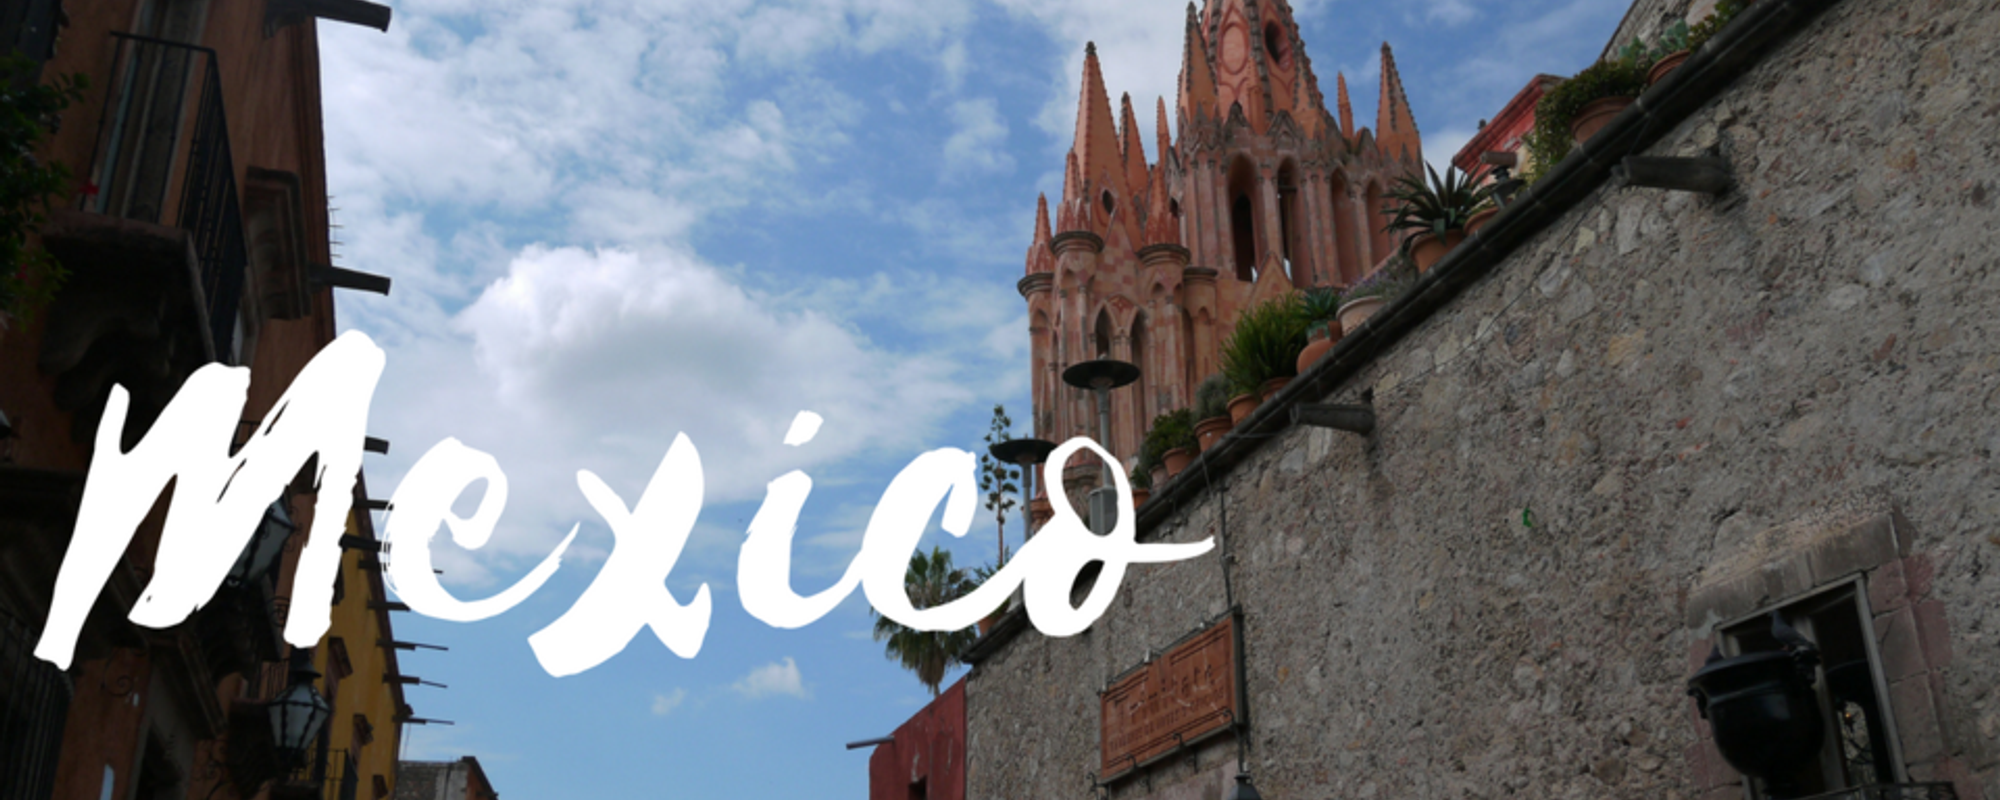 Hidden treasures of San Miguel de Allende